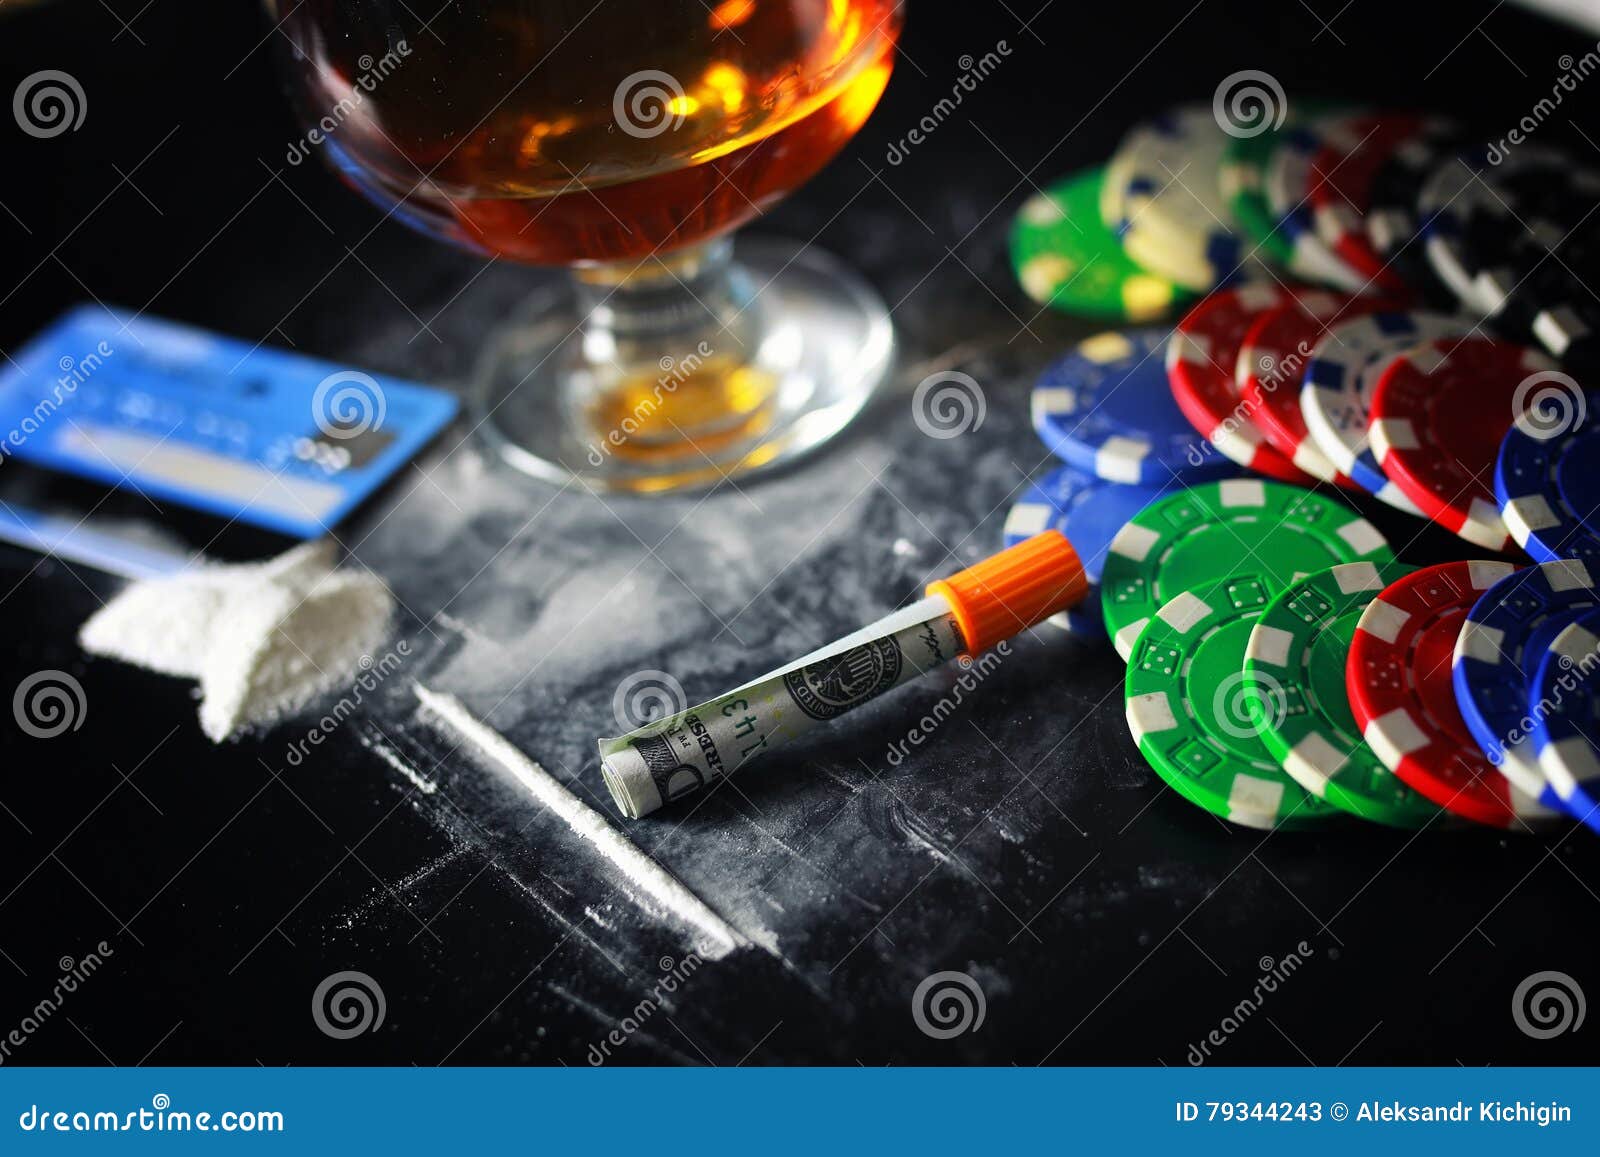 Азартные игры напитки. Азартные игры наркотики. Азартные игры и алкоголь. Алкоголю, наркотикам и азартным играм. Кокаин и Покер.